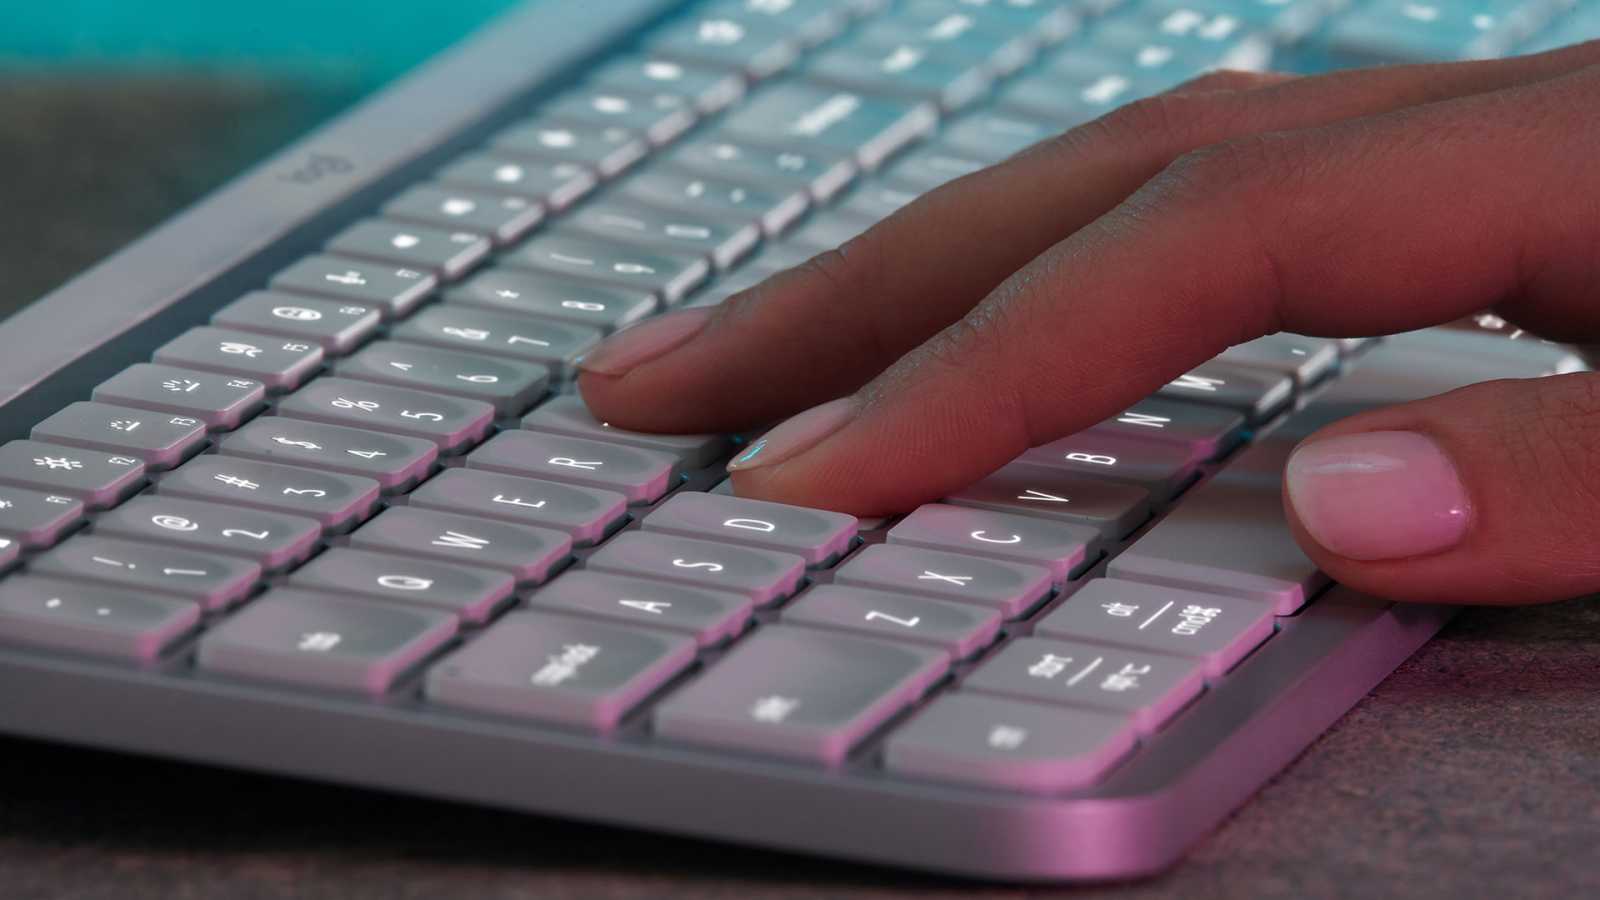 Logitech MX Keys S je synonymem dokonalé bezdrátové klávesnice s podsvícením